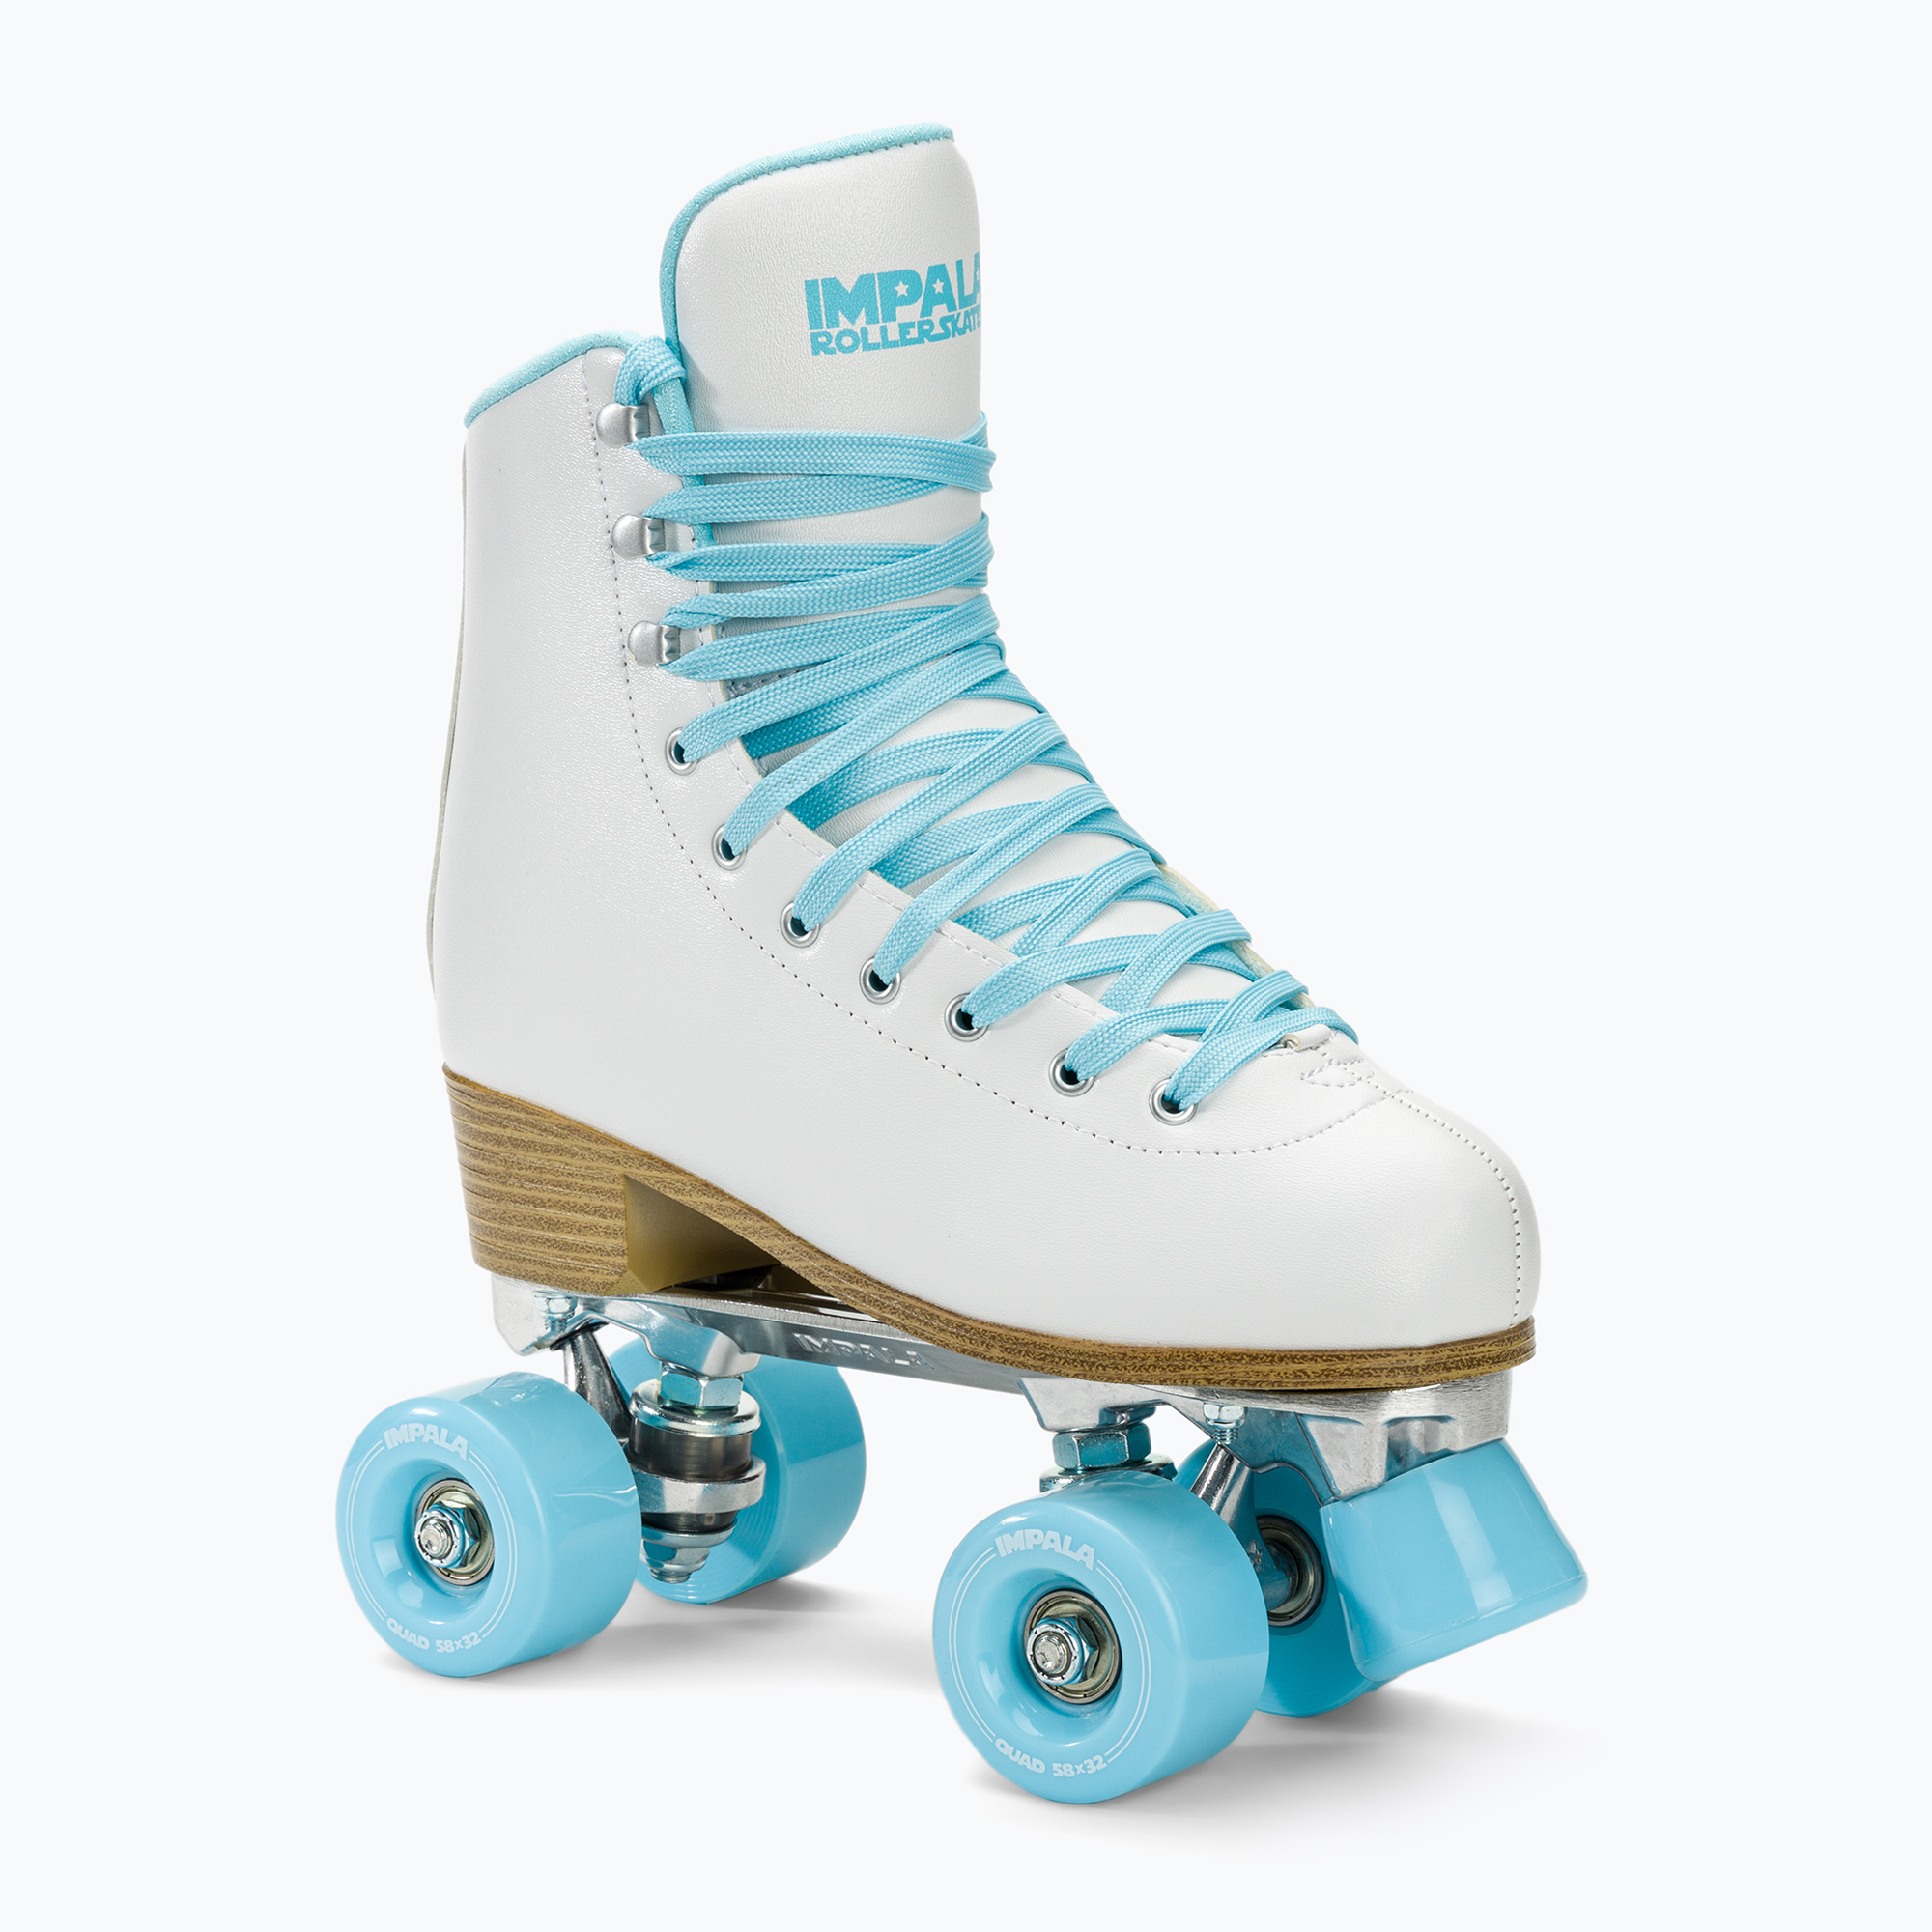 Дамски ролкови кънки IMPALA Quad Skate white ice